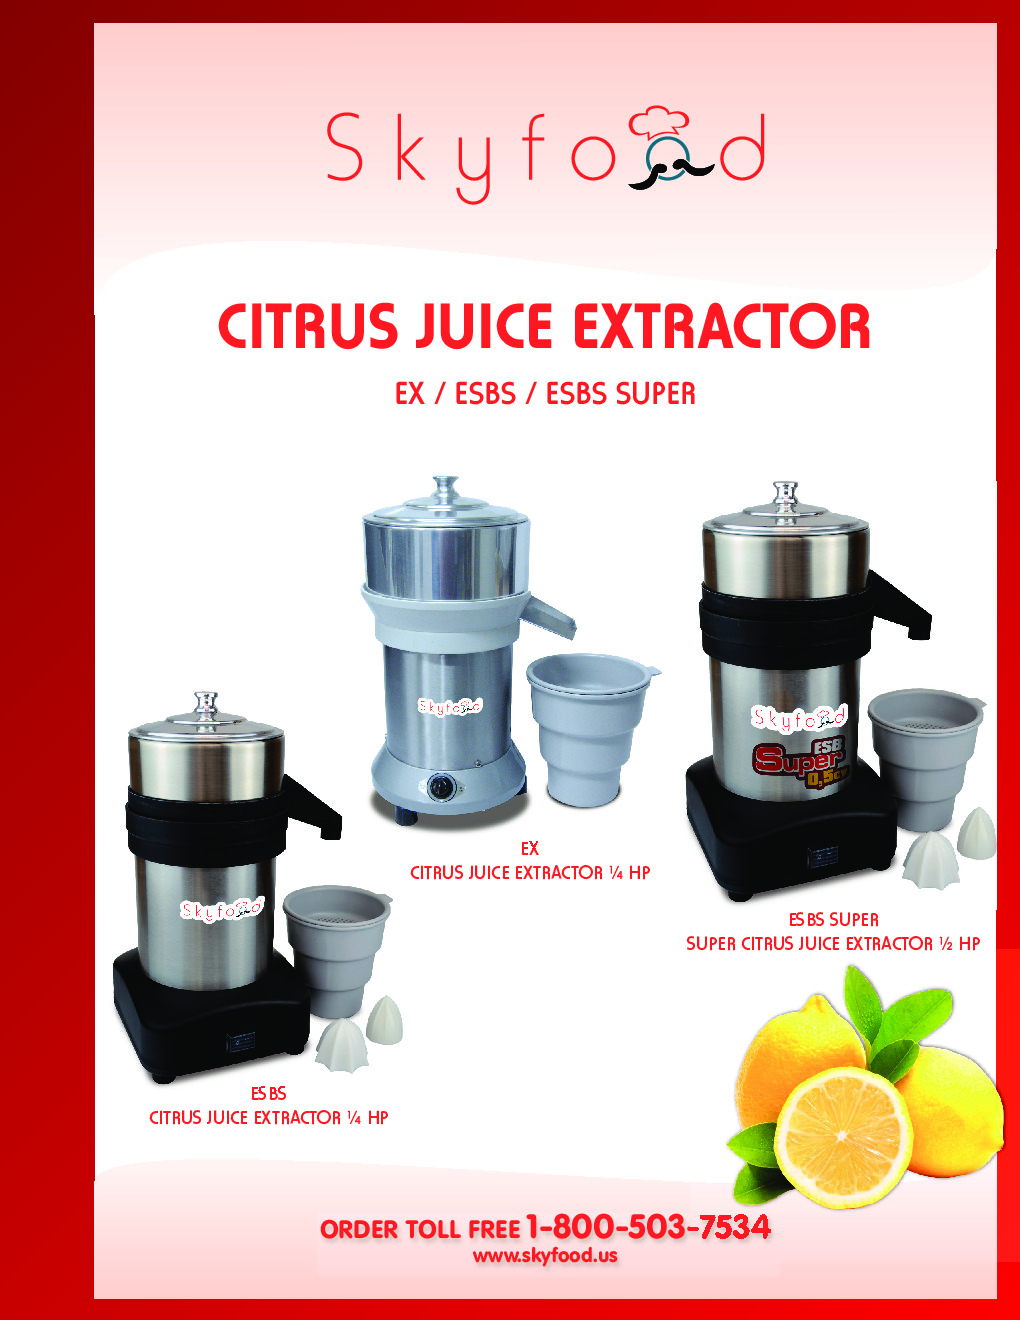 Skyfood Citrus Juice Extractor ESBS, 1/4 HP, 34 oz